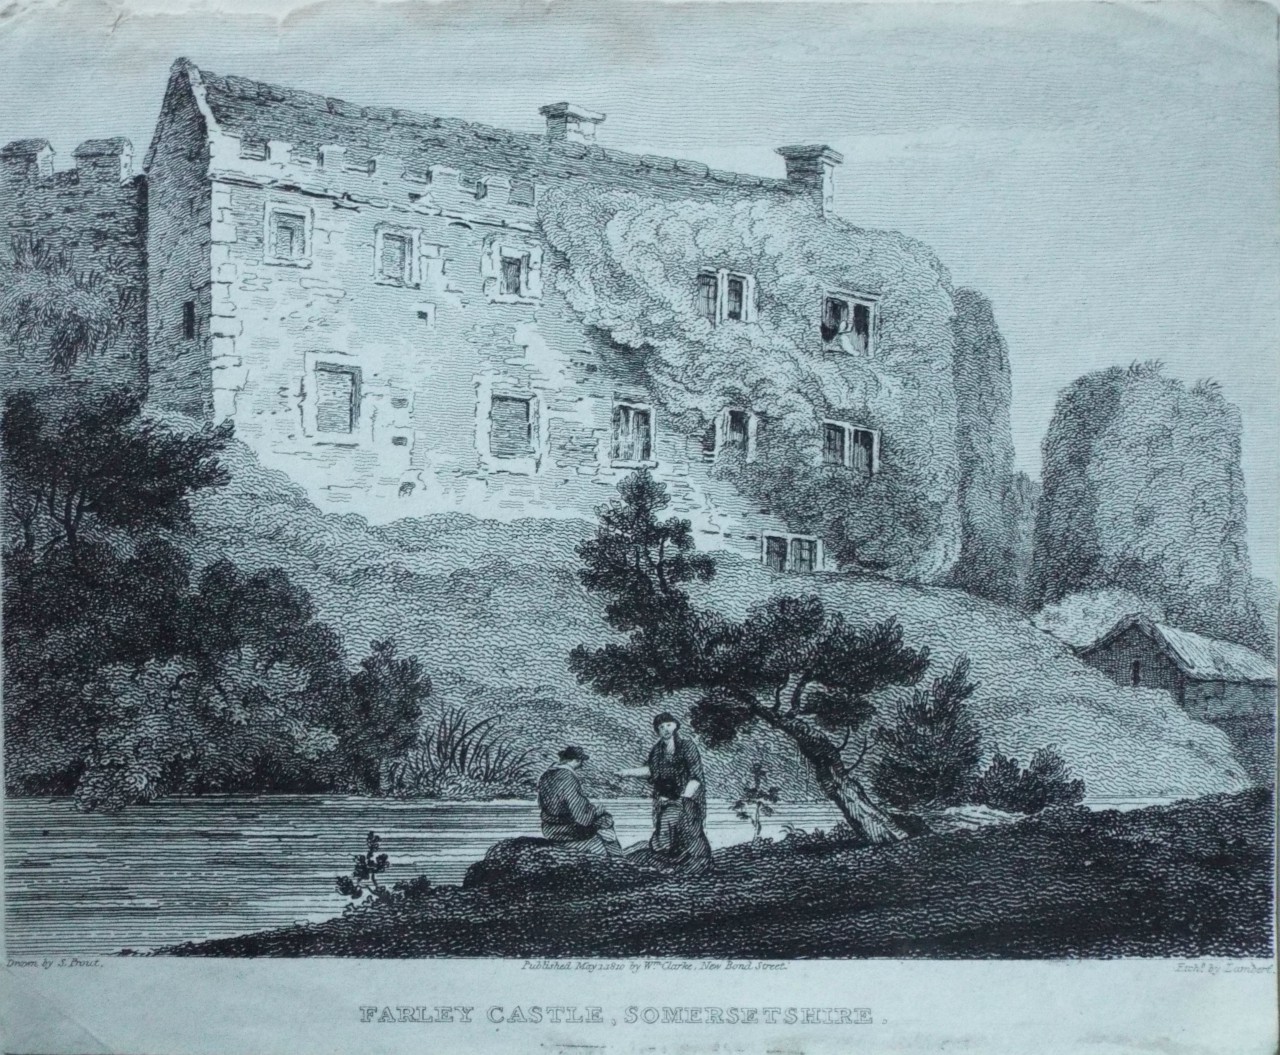 Print - Farley Castle, Somersetshire.